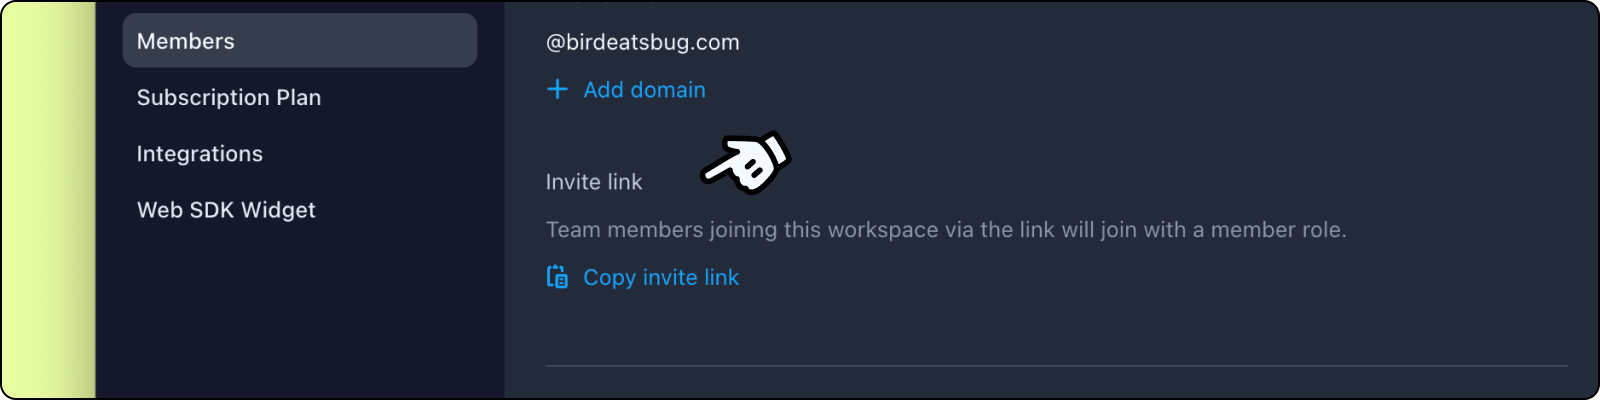 Copy invite link